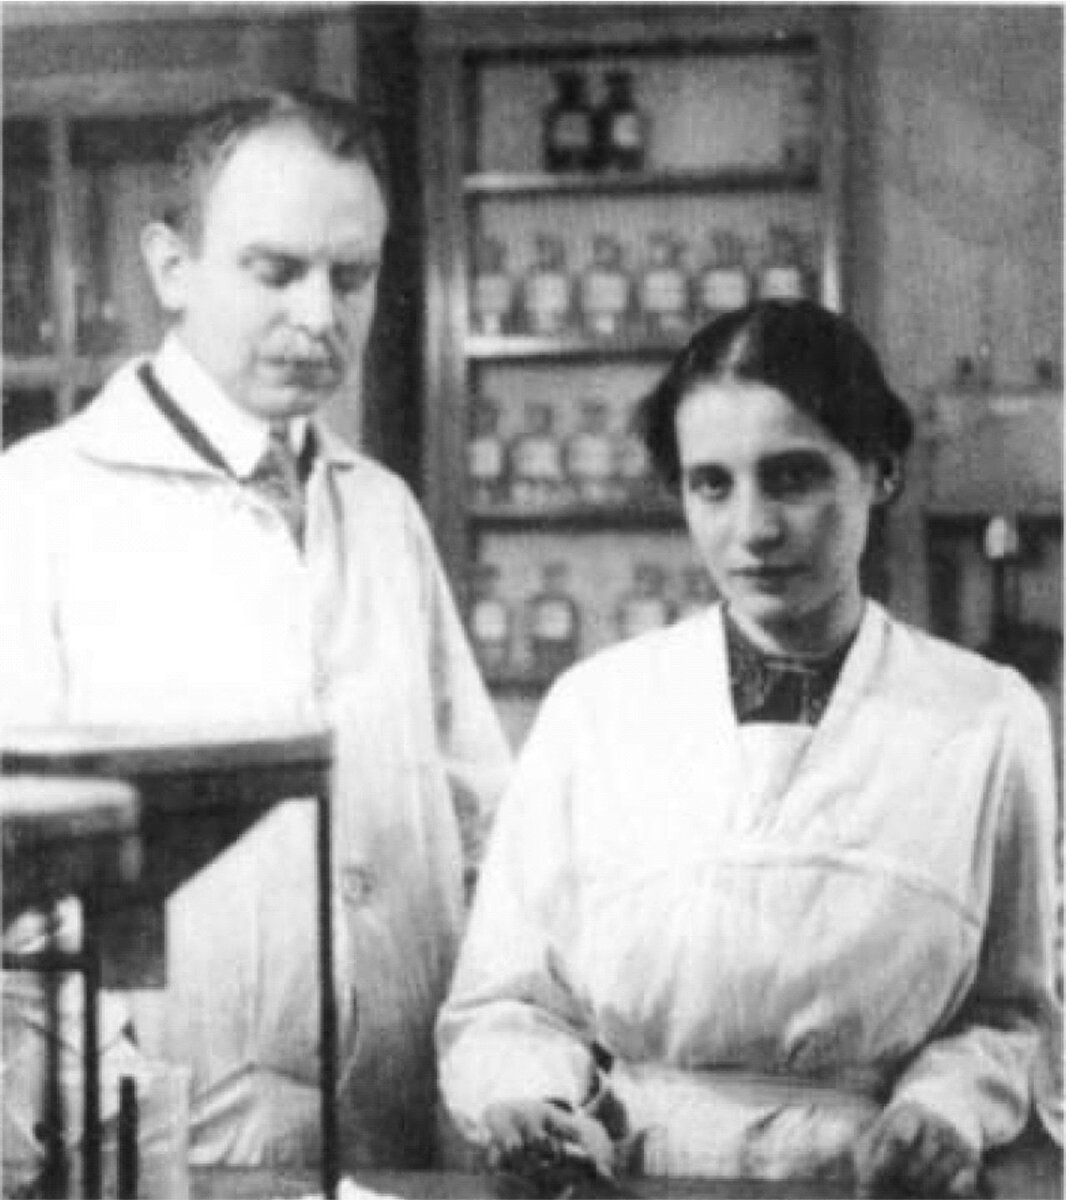 Ган и Мейтнер в лаборатории